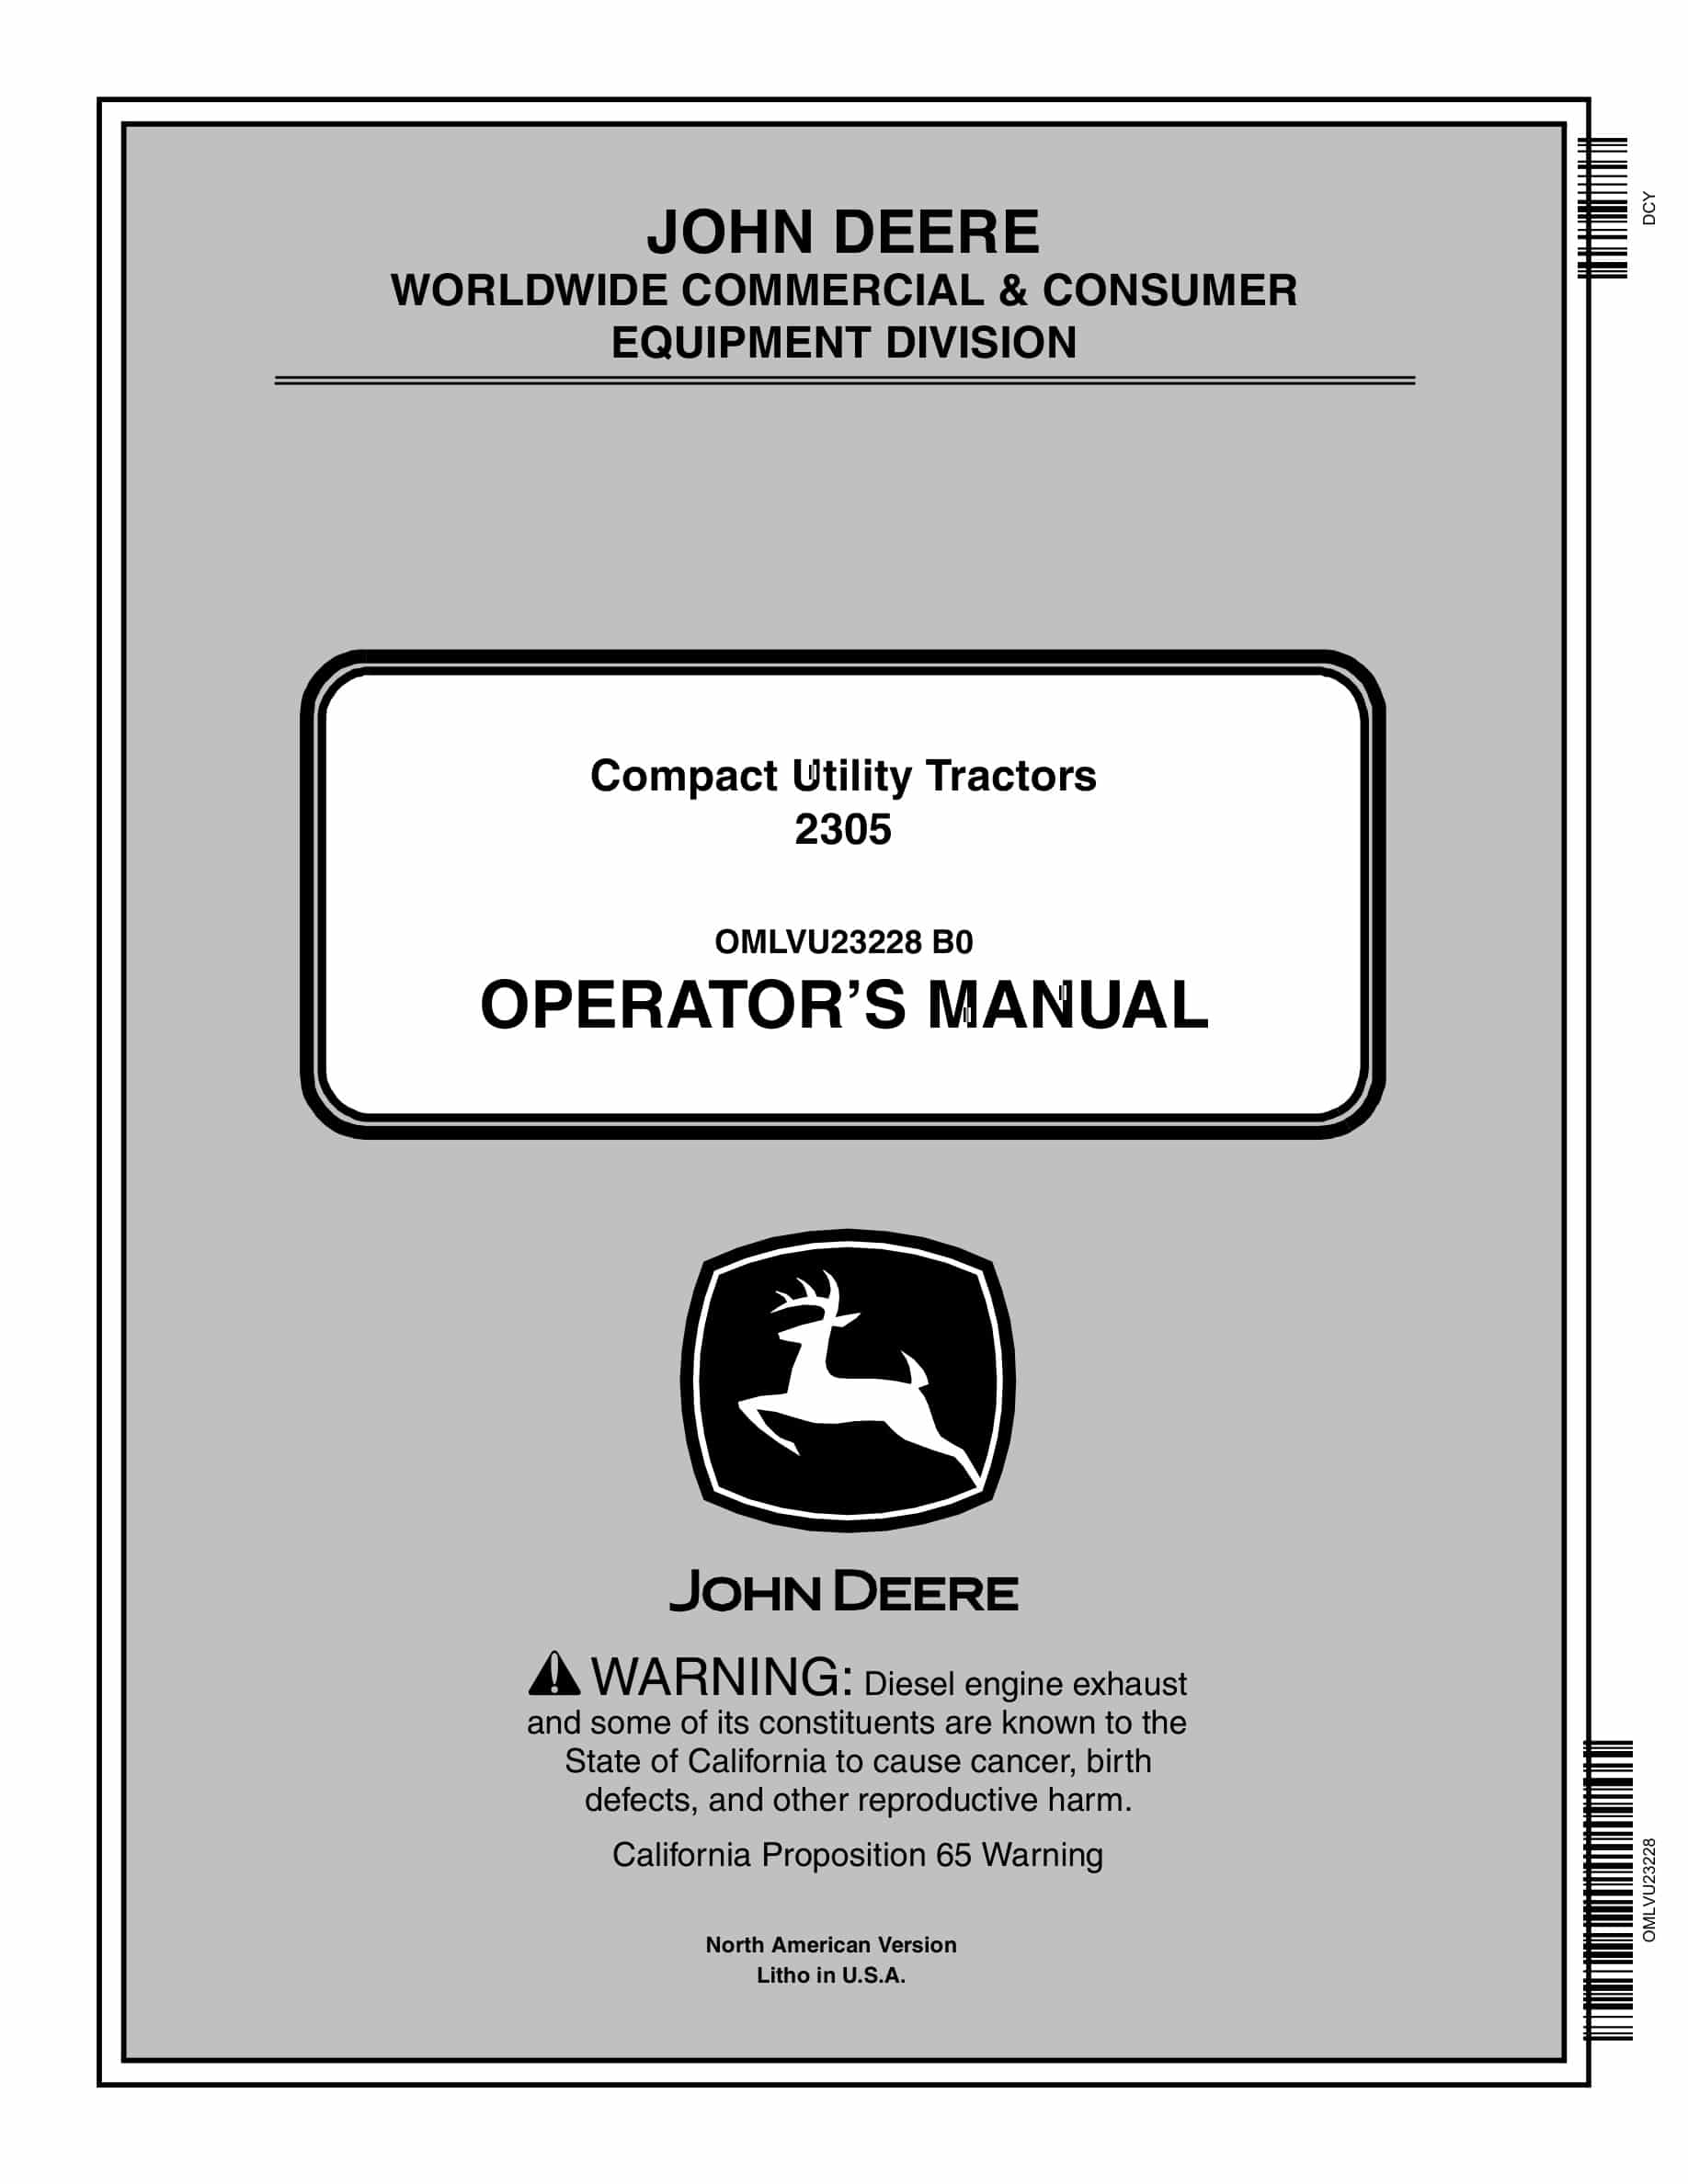 John Deere 2305 Tractor Operator Manual OMLVU23228-1